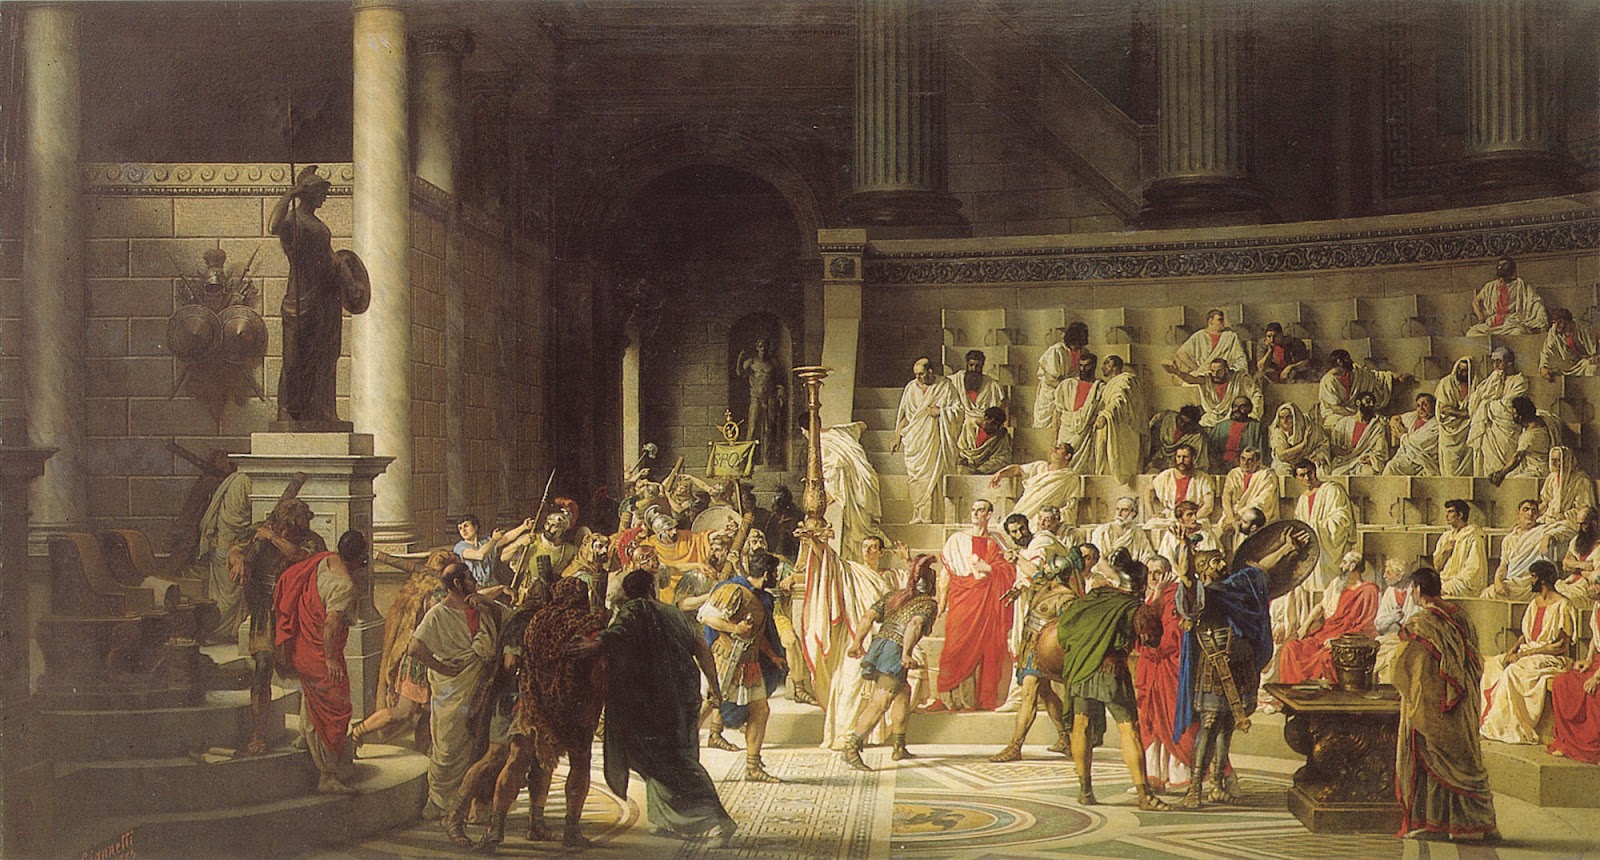 The Roman Republic (509 – 27 BC)